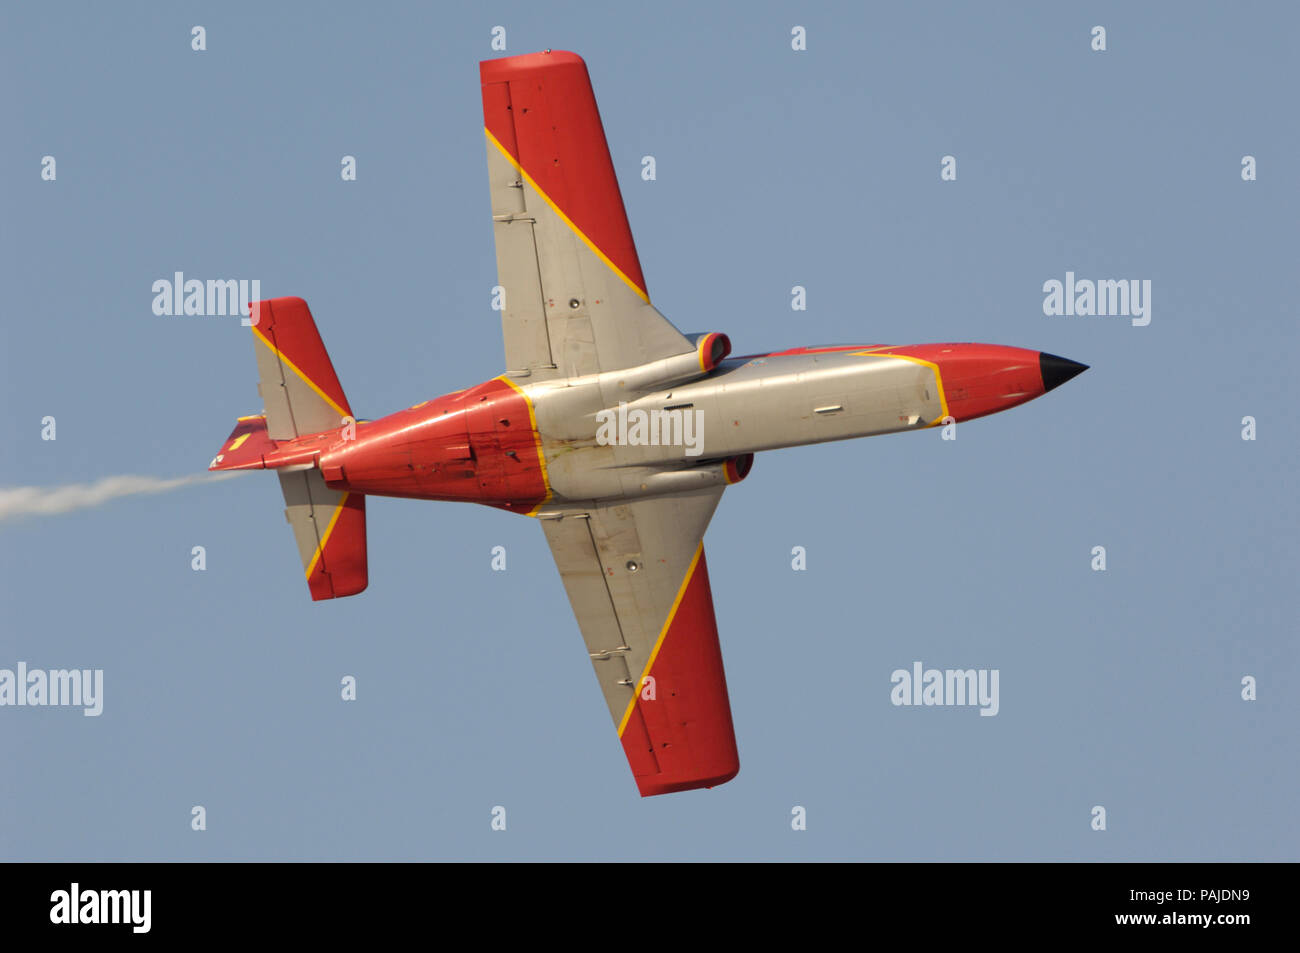 Spanien Air Force Patrulla Aguila Acrobatica Casa C 101 Aviojet Eb Fliegen Mit Dem Rauch Auf Der Dubai Airshow 07 Stockfotografie Alamy